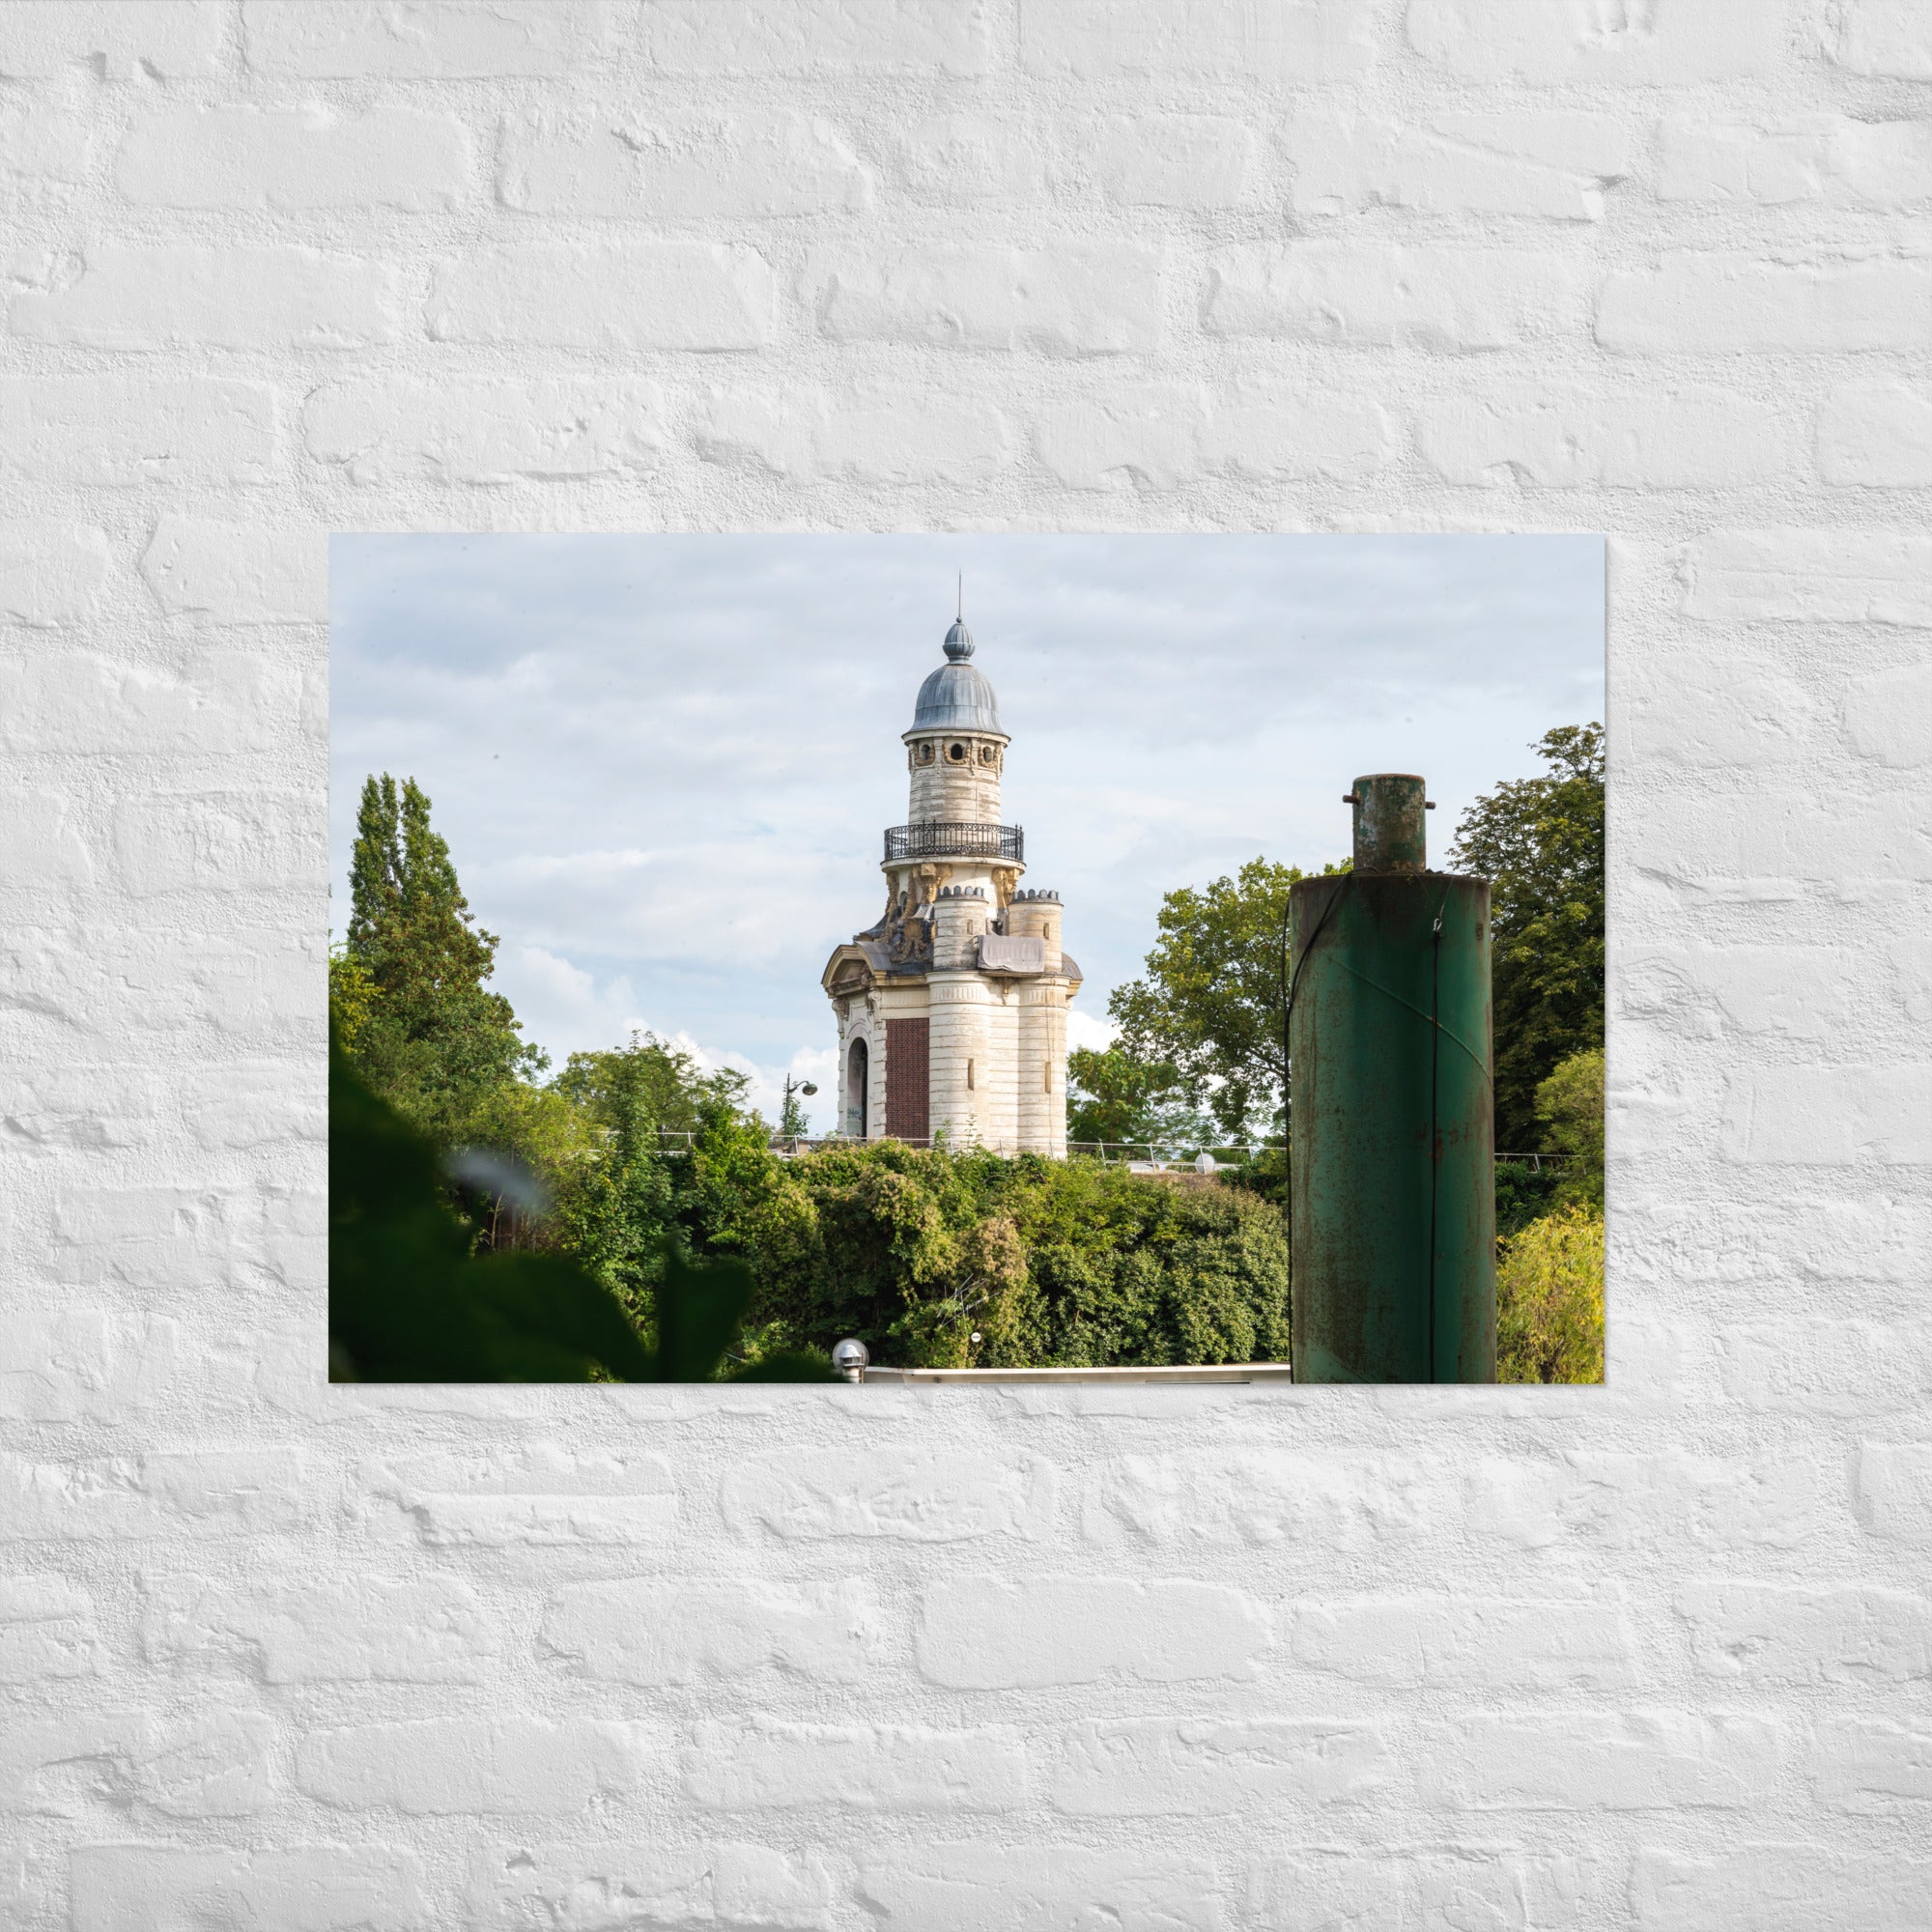 Photographie du poster 'La pompe-à-feu du château de Bagatelle', capture d'une pièce d'architecture antique dans un cadre historique.